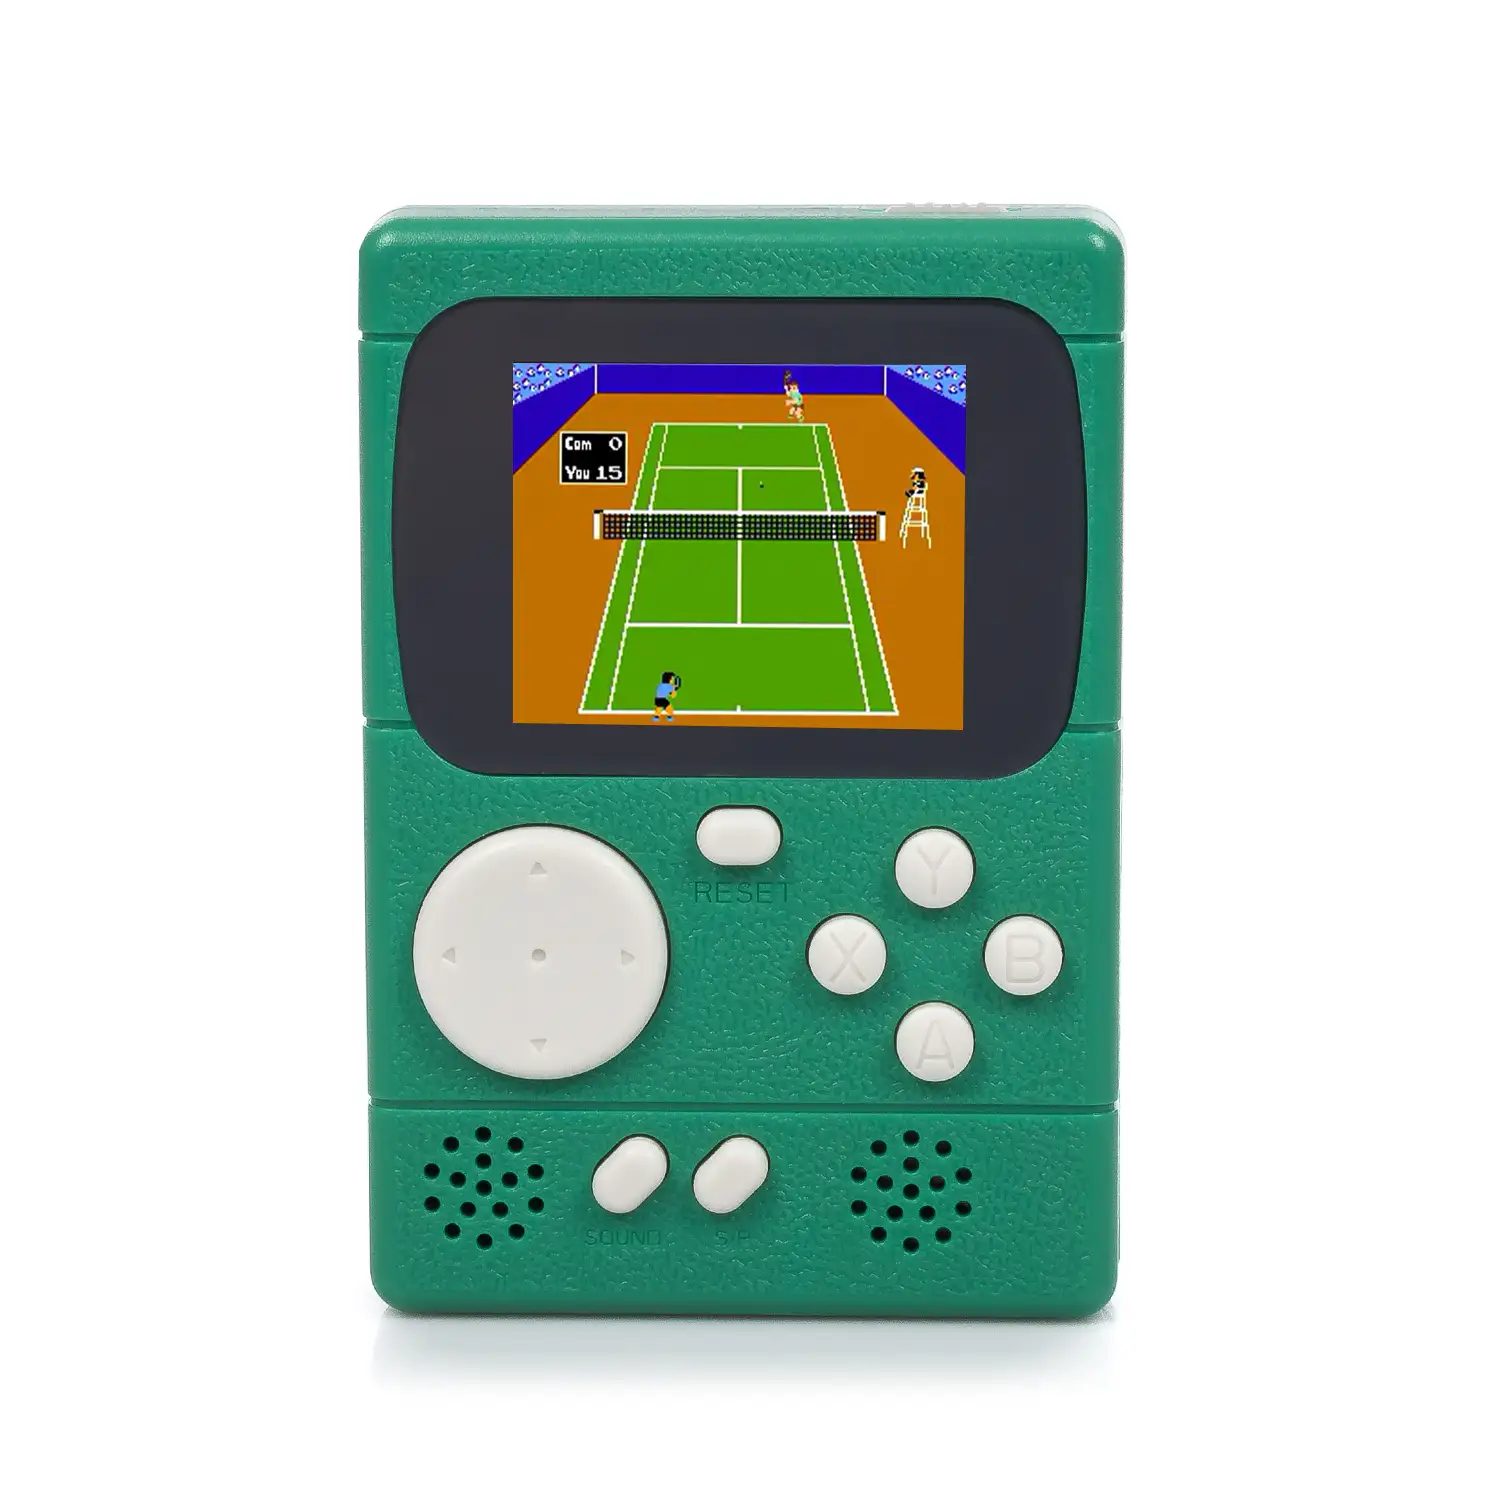 Mini consola portátil retro Pocket Player con 198 juegos de 8 bits, pantalla de 2 pulgadas.